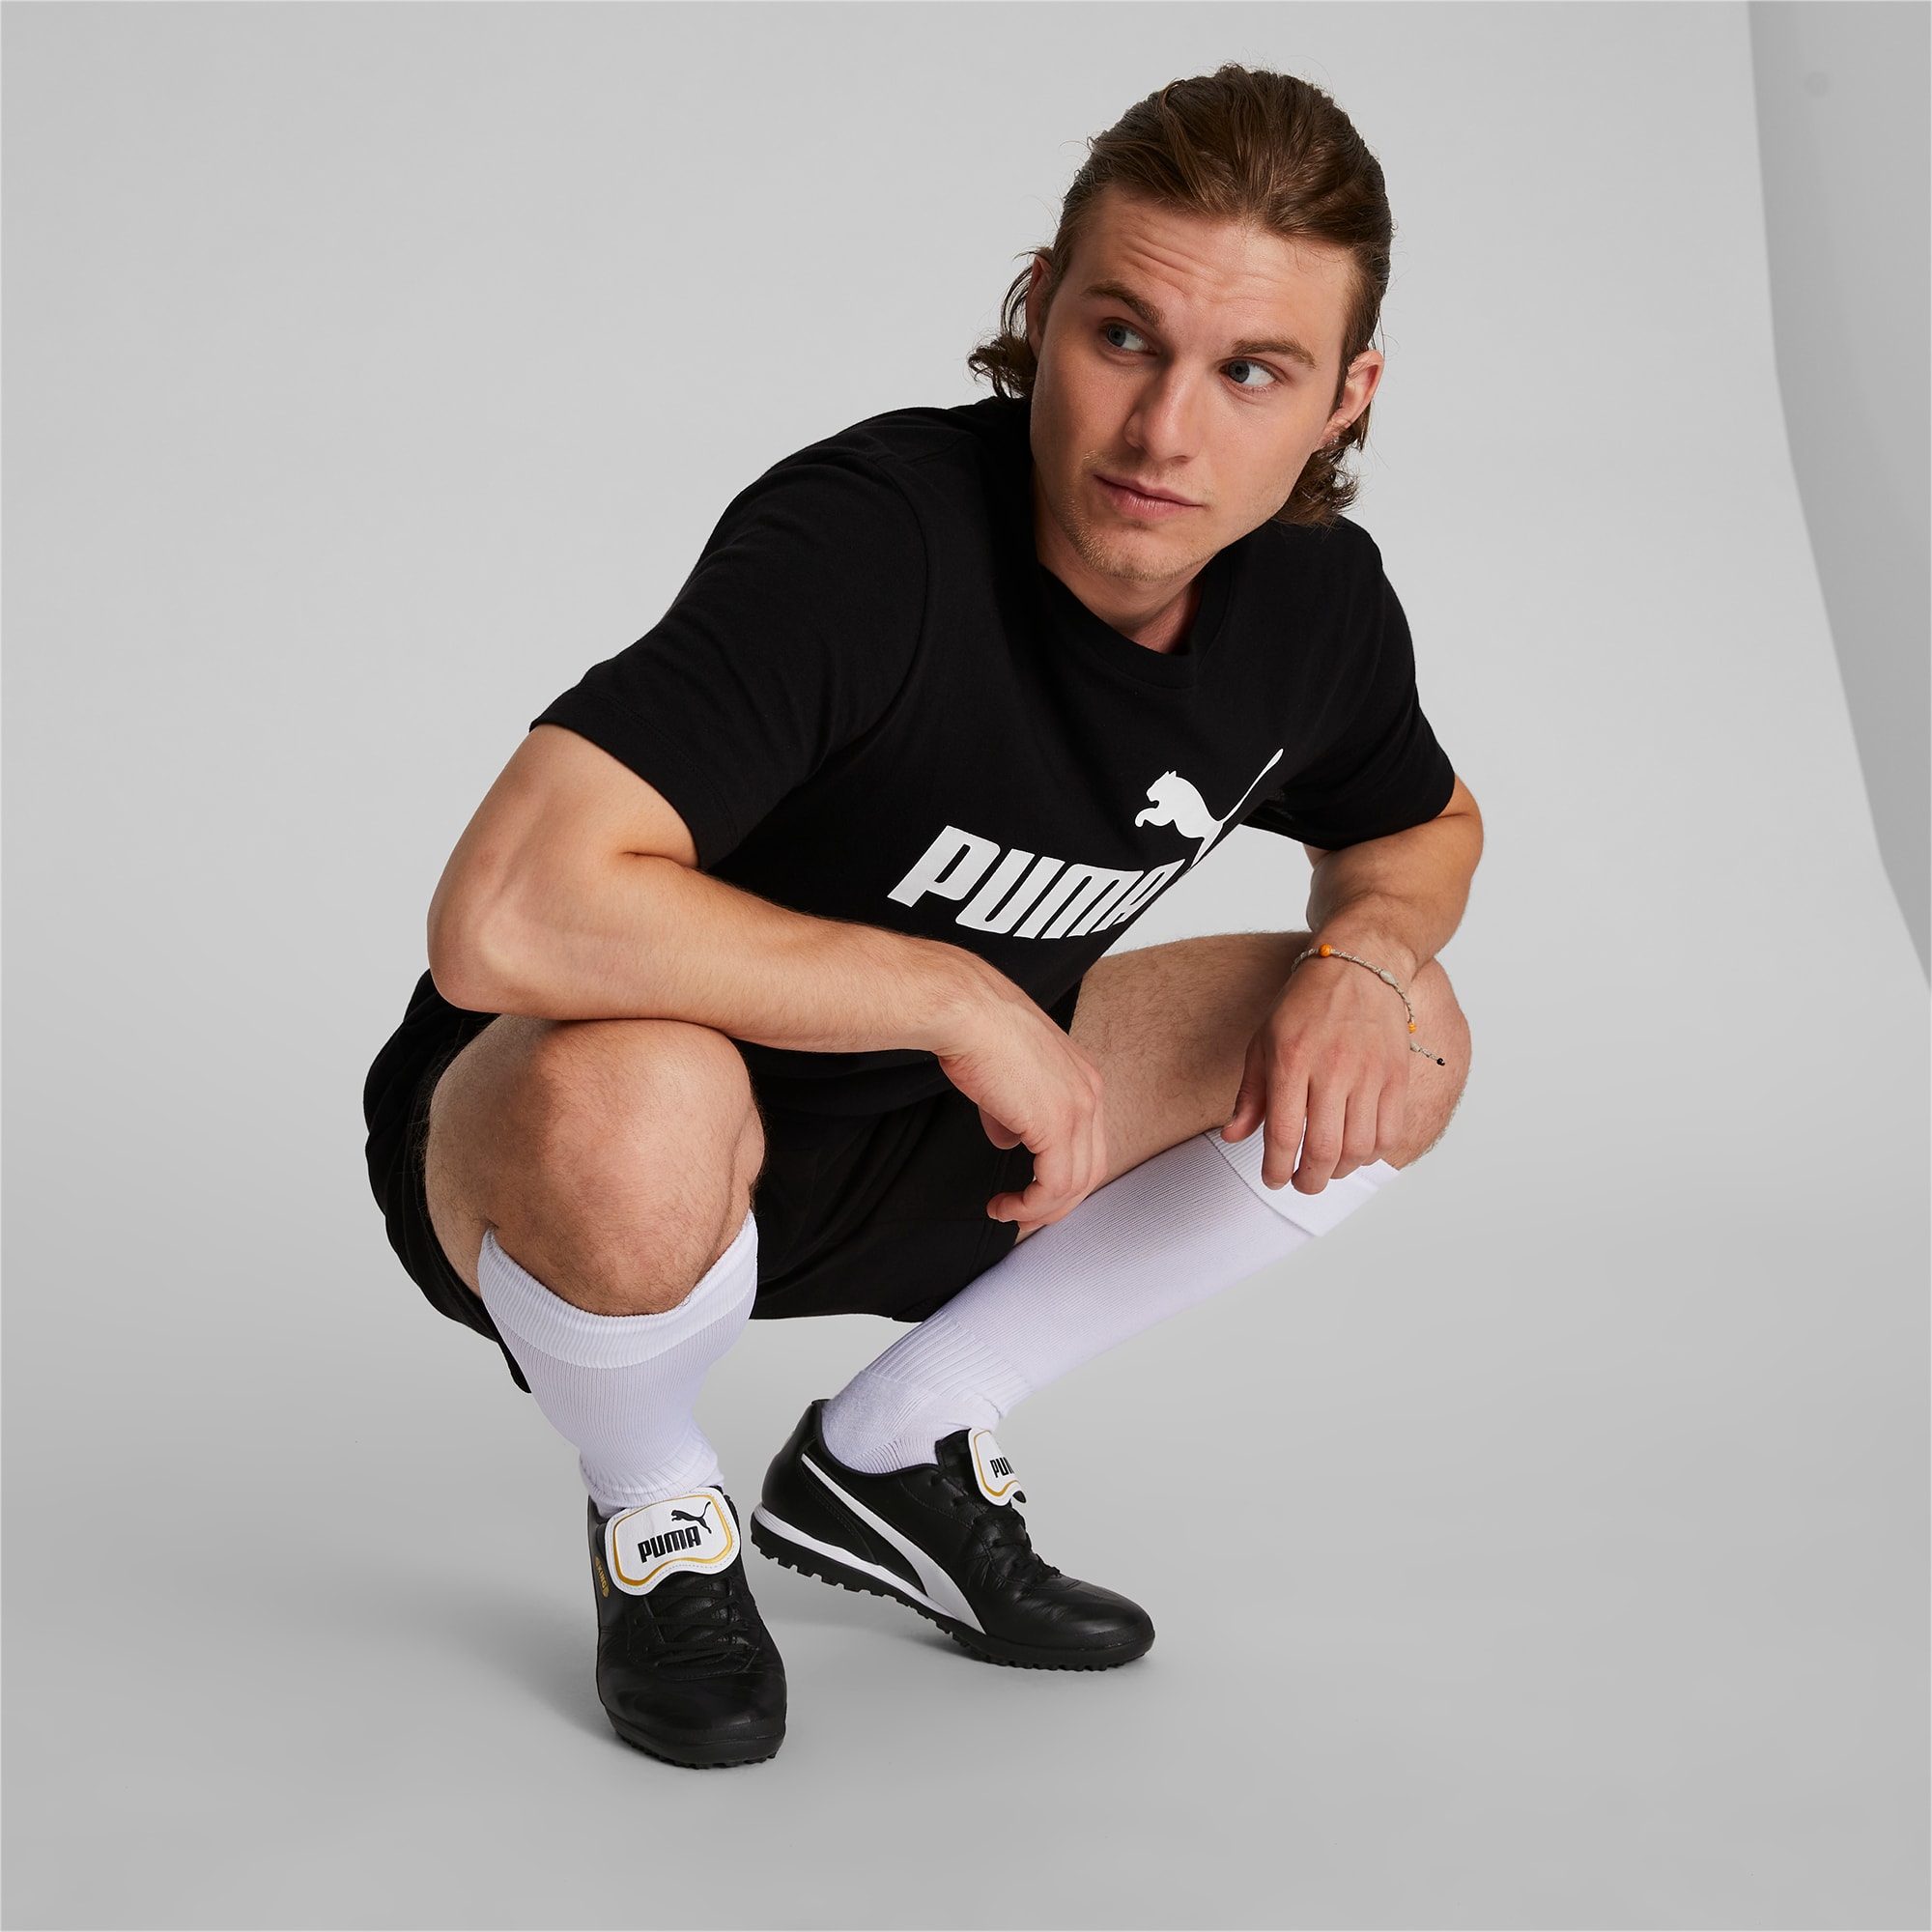 King Top TT Men's Soccer Shoes | PUMA US